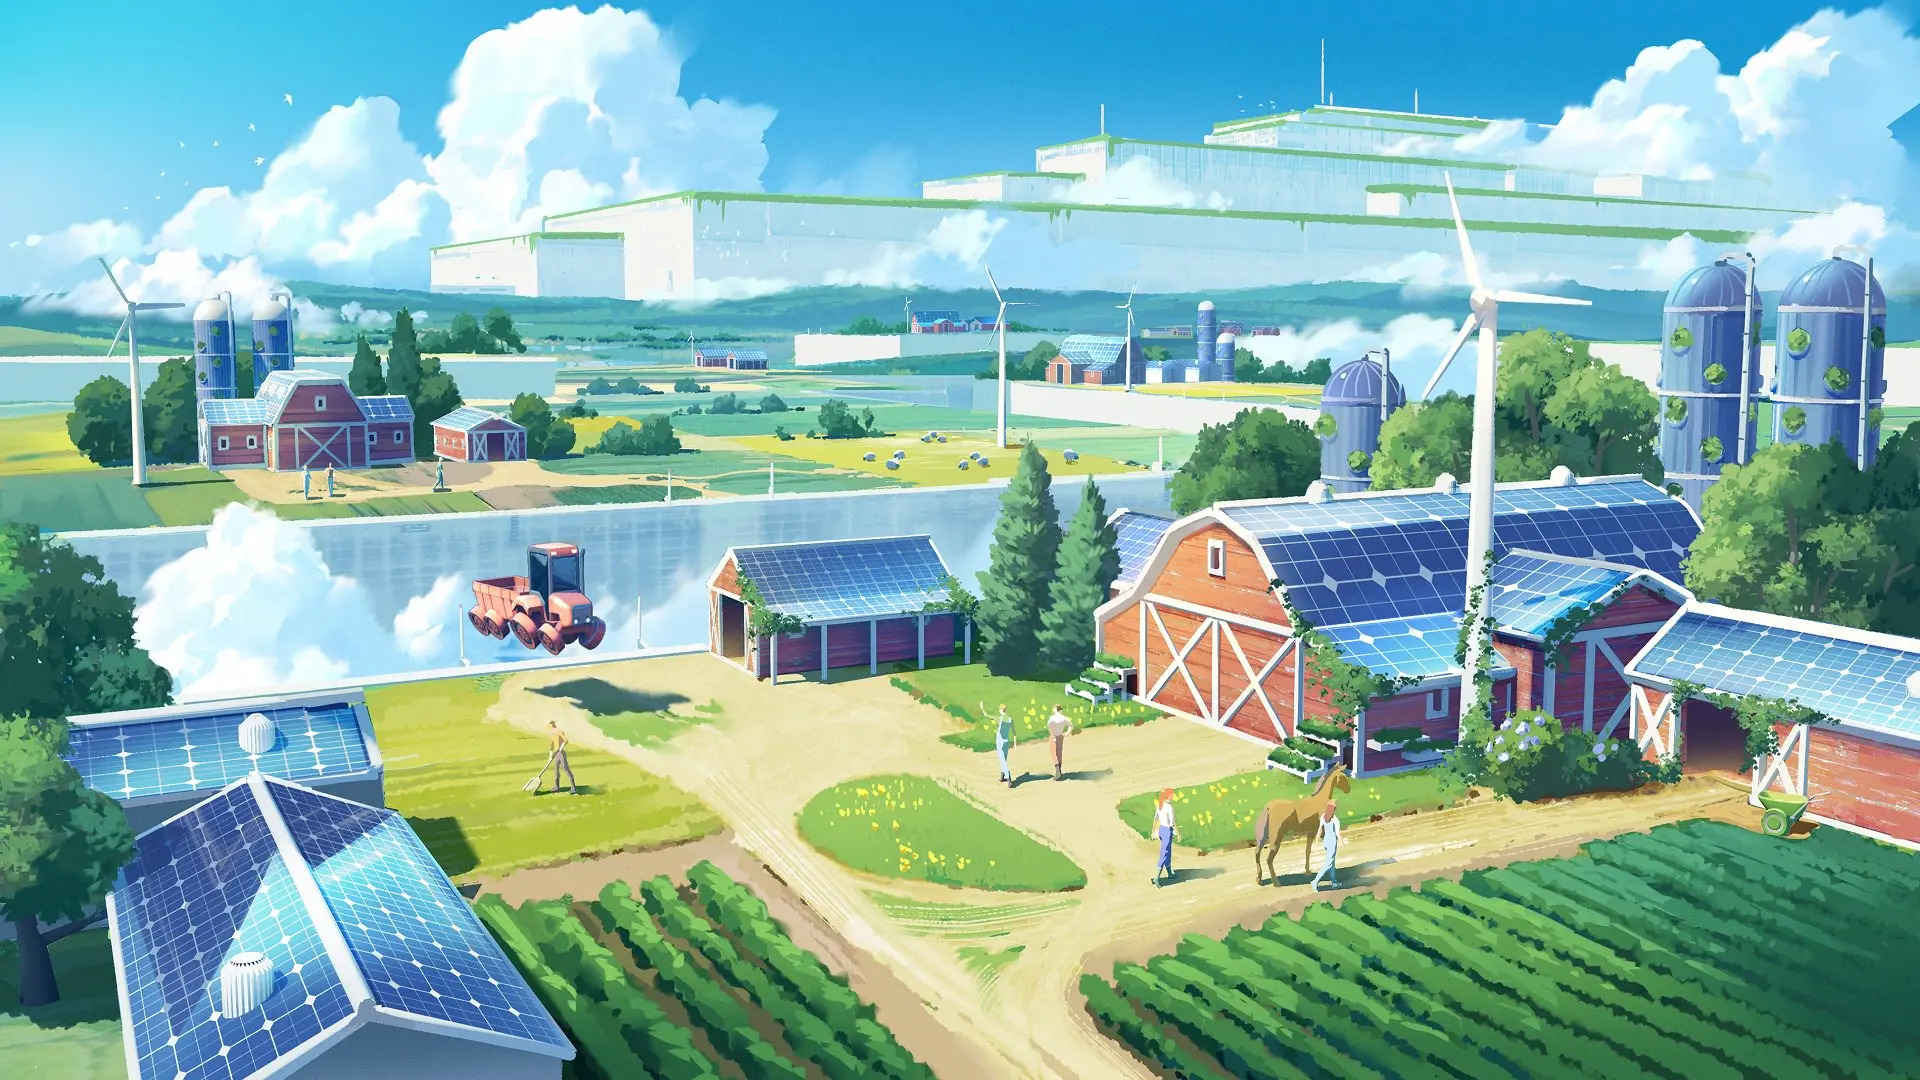 کارخانه سیلو شبیه سازی مزرعه آینده نیروی خورشیدی